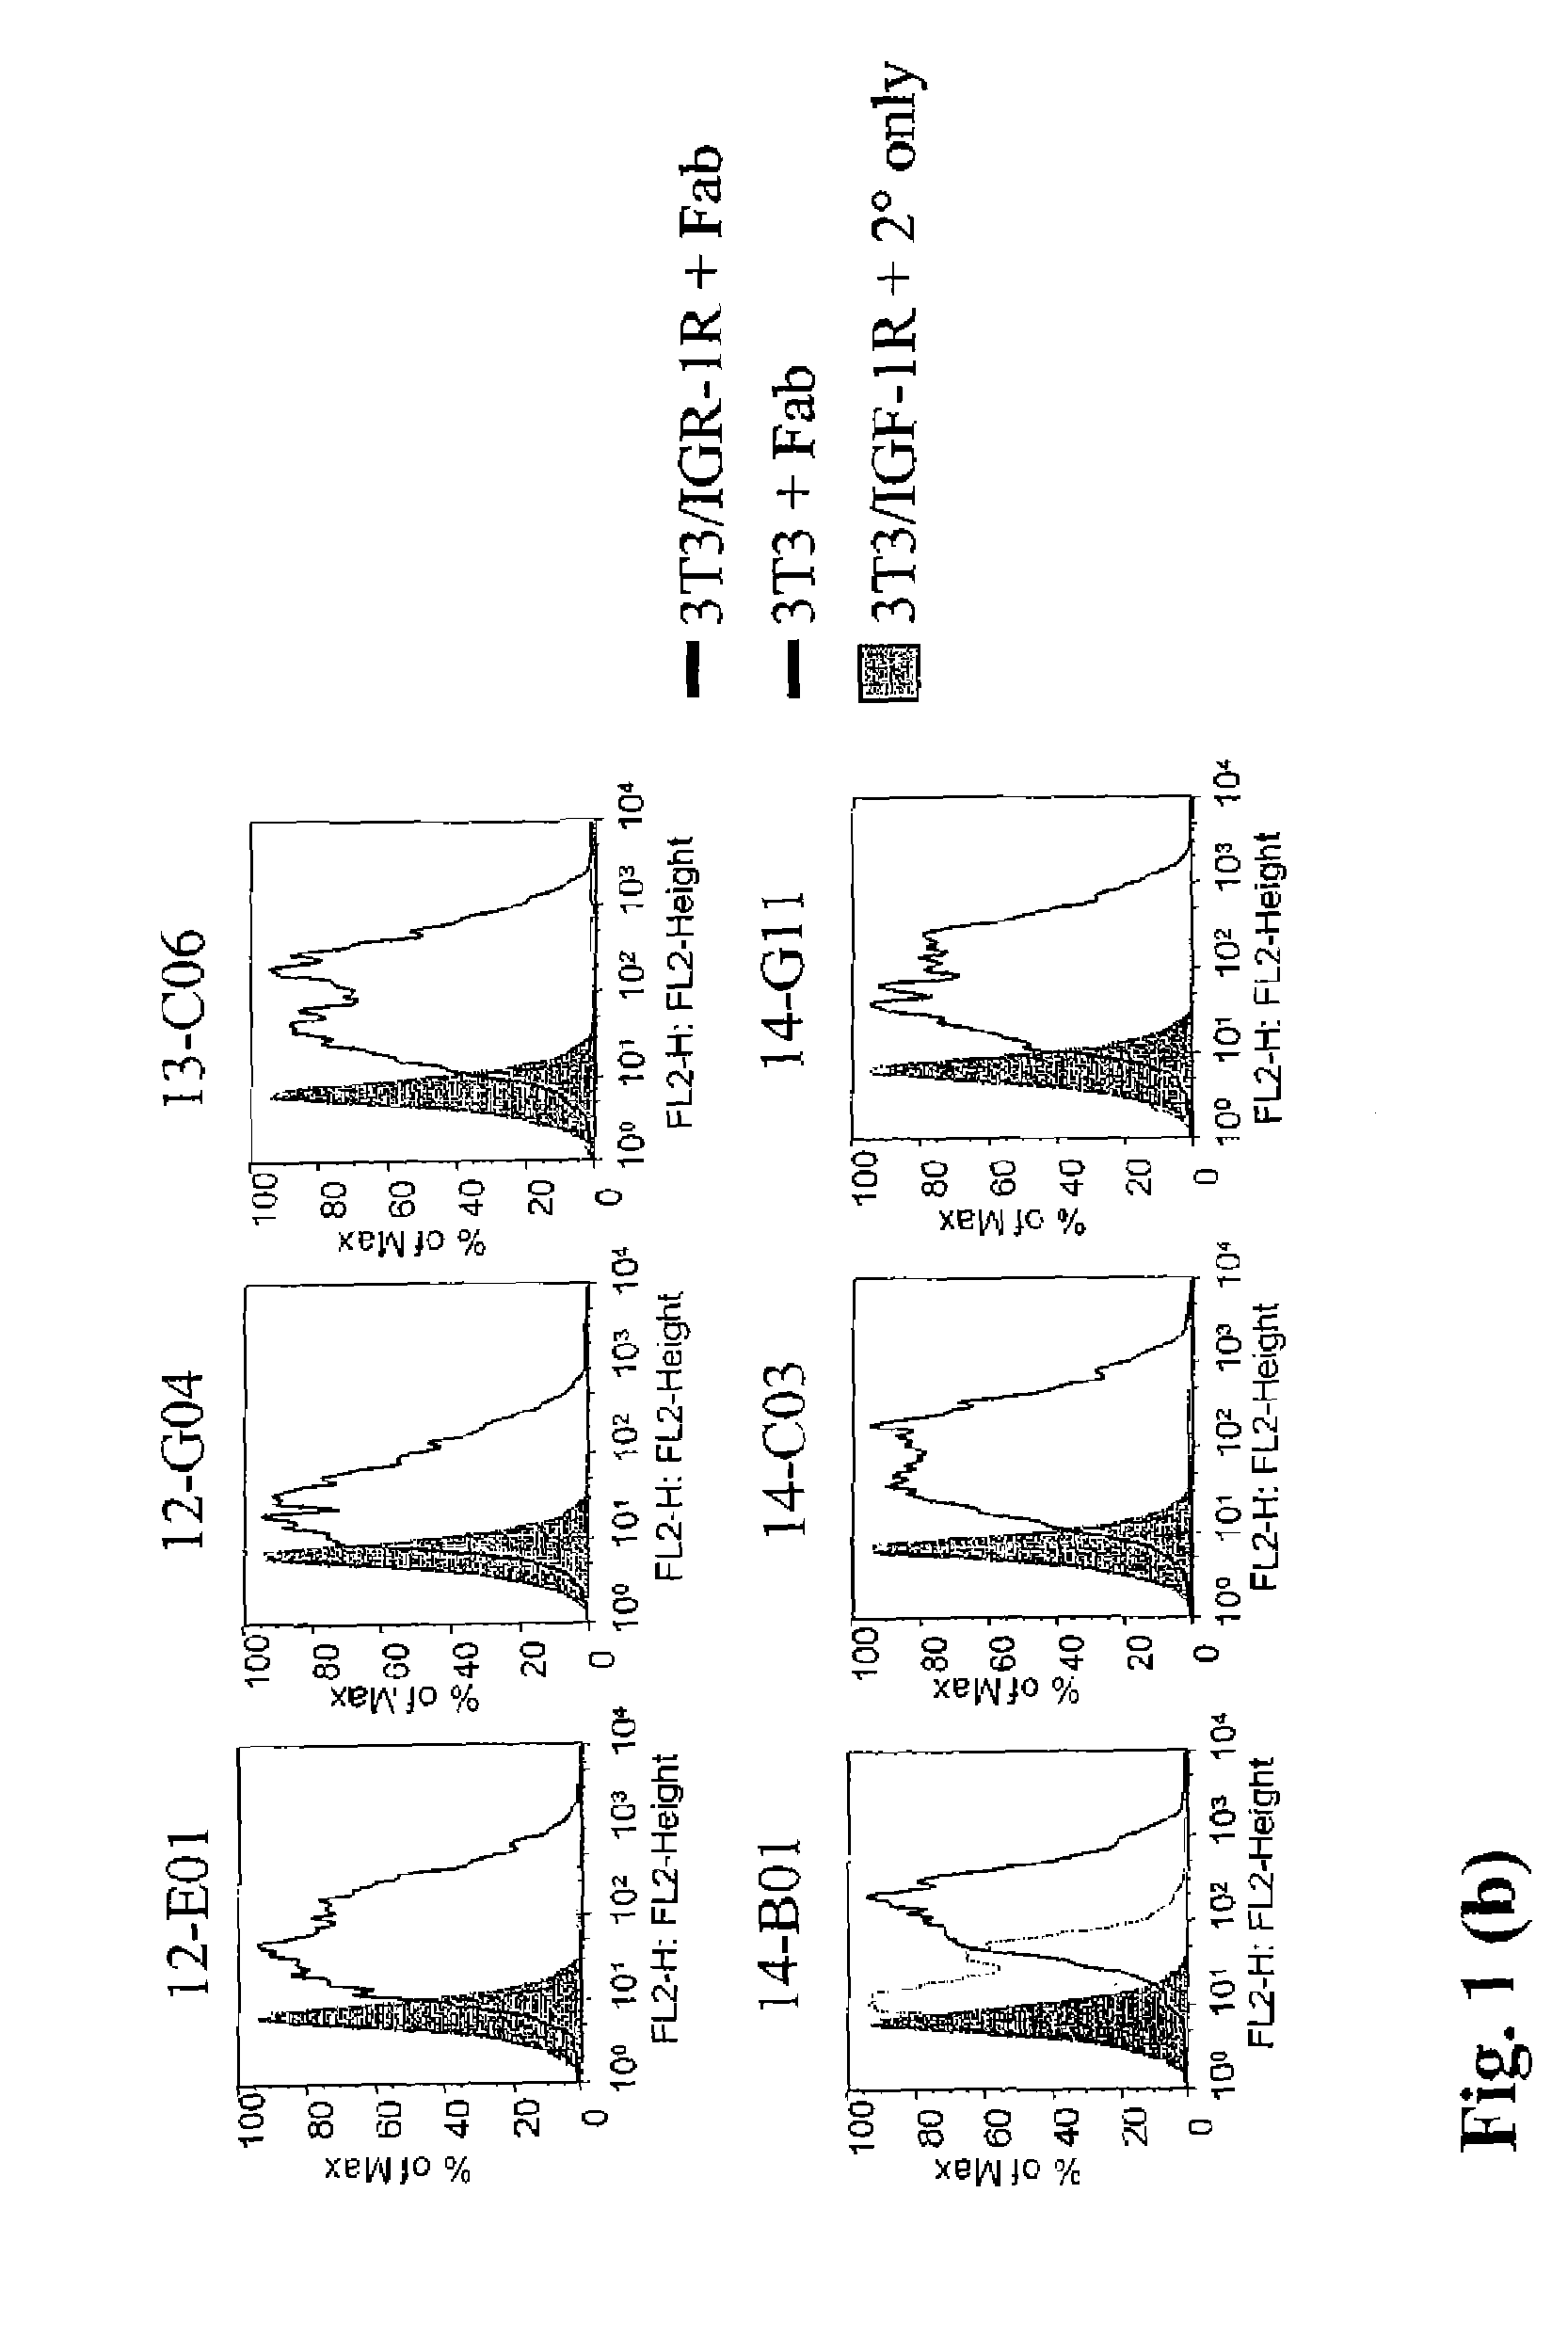 Anti-IGF-1R antibodies and uses thereof